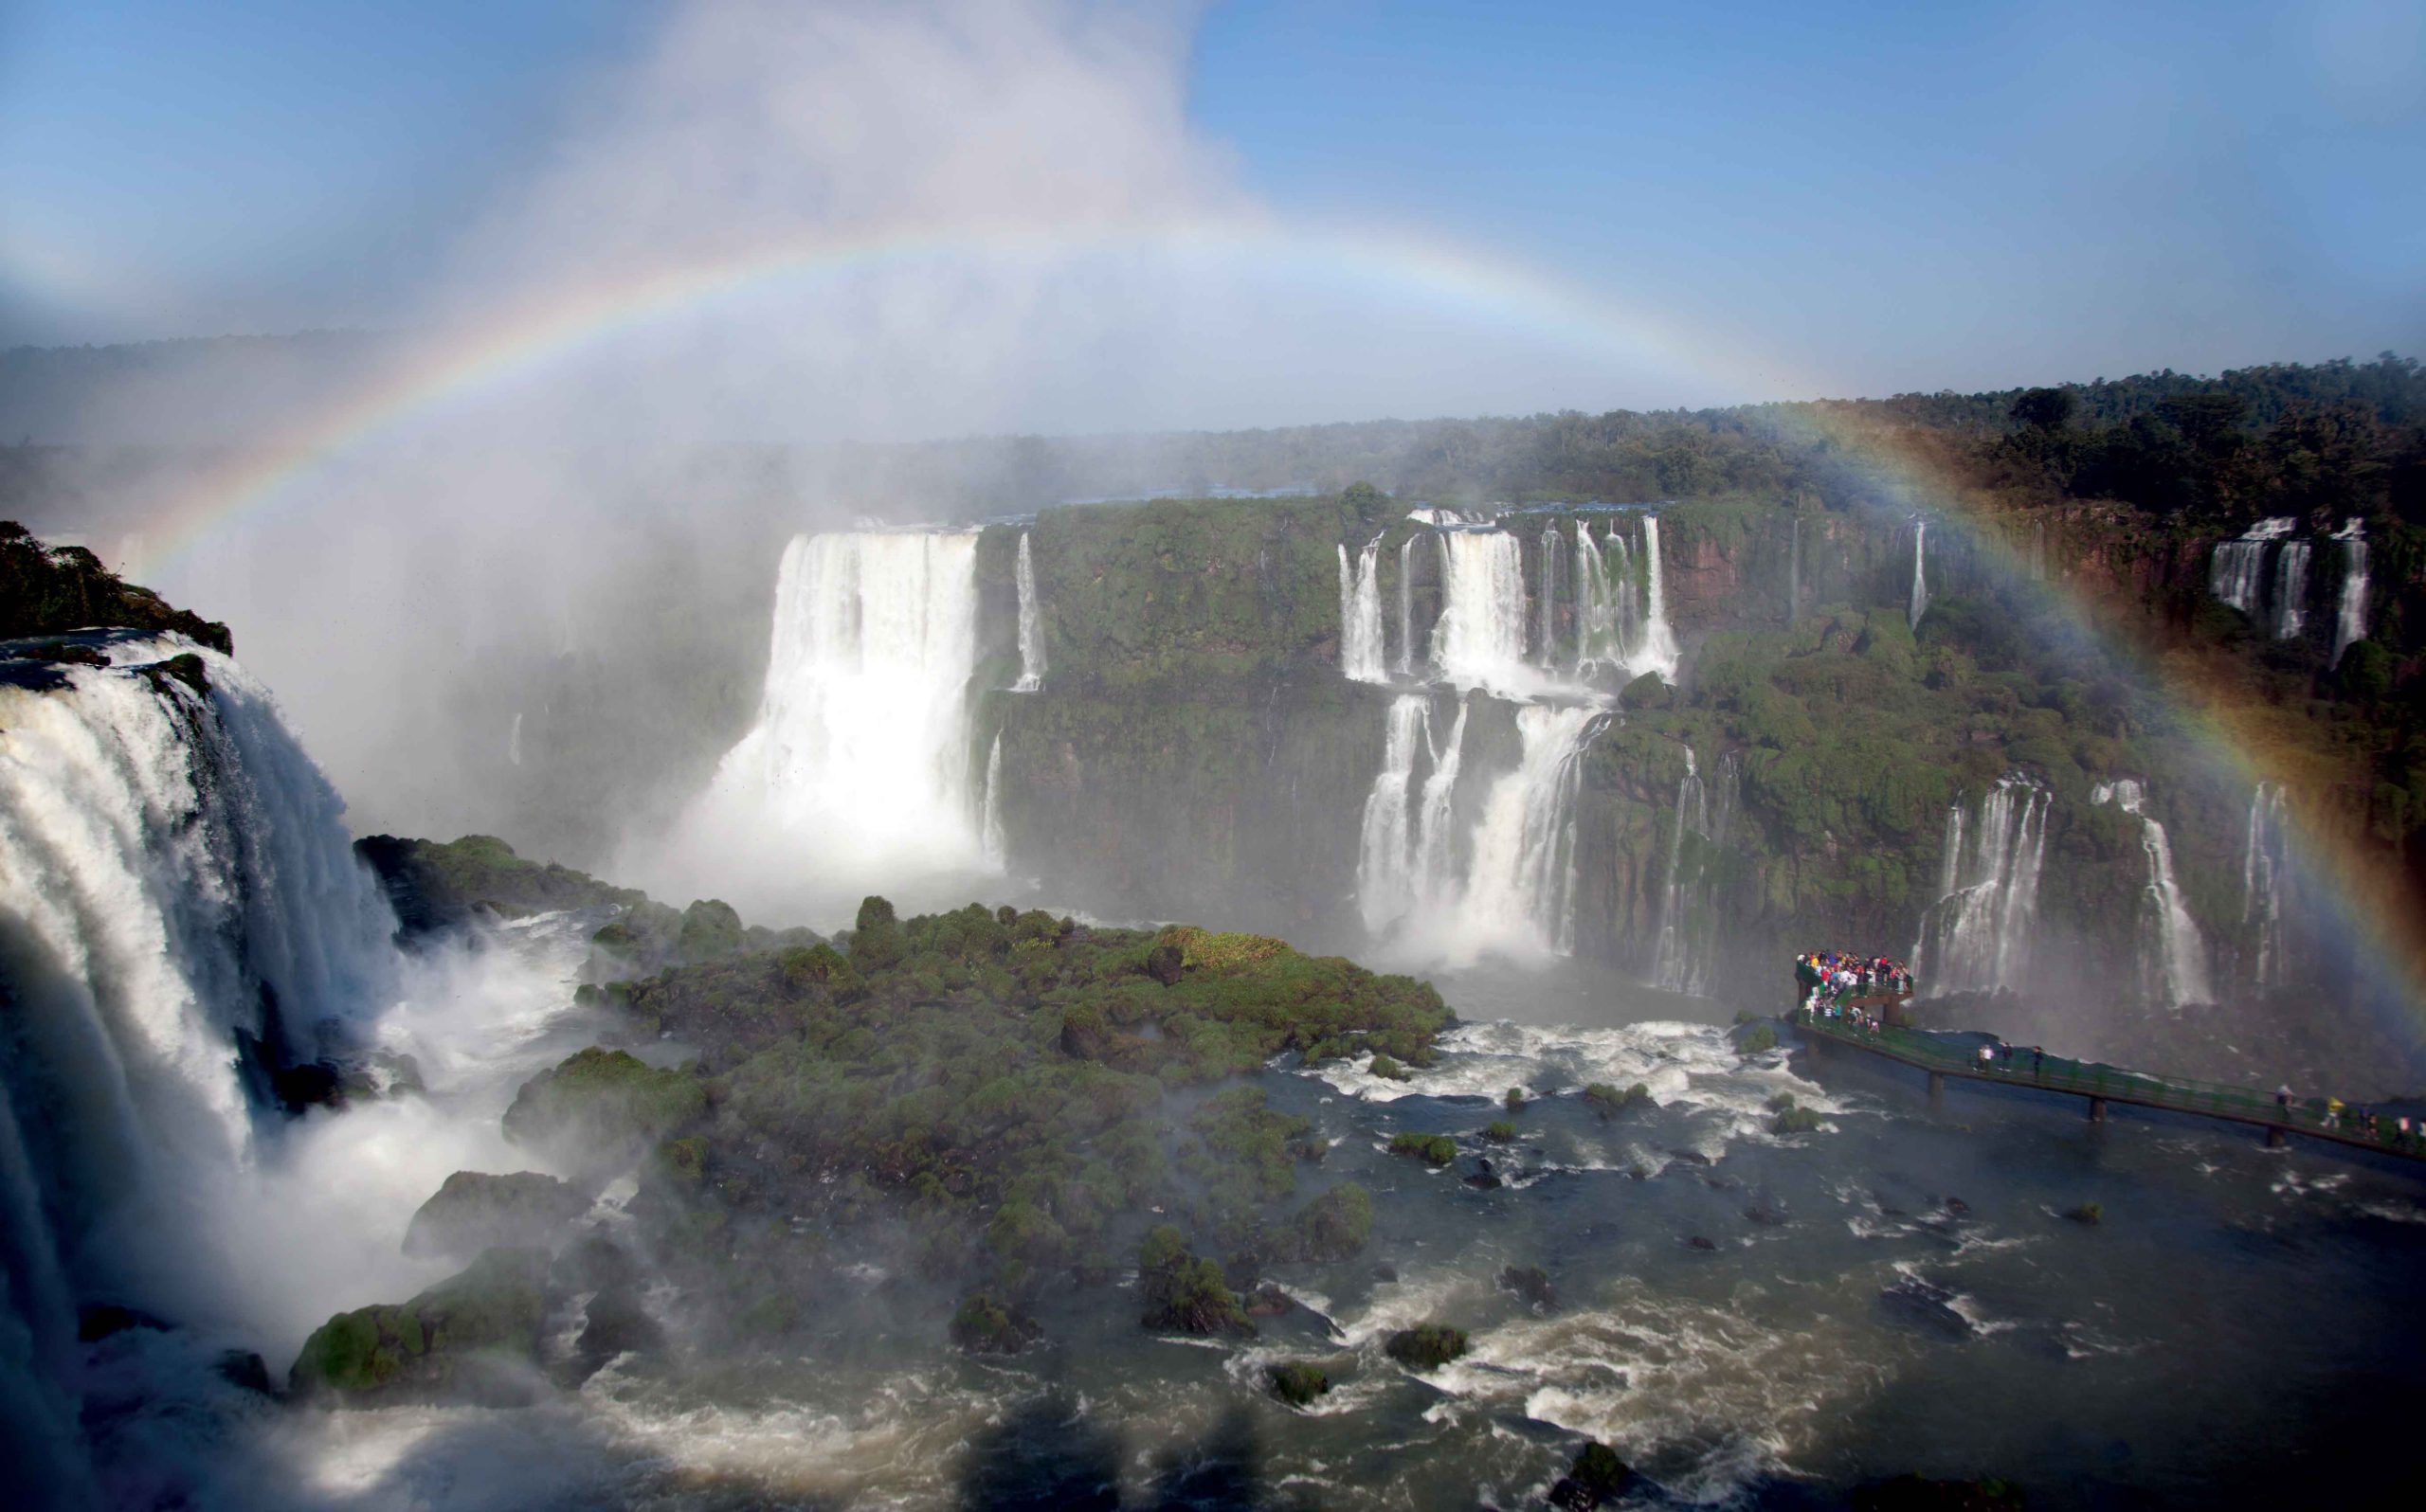 The South American Trifecta: Easter Island, Machu Picchu, and Iguazu Falls